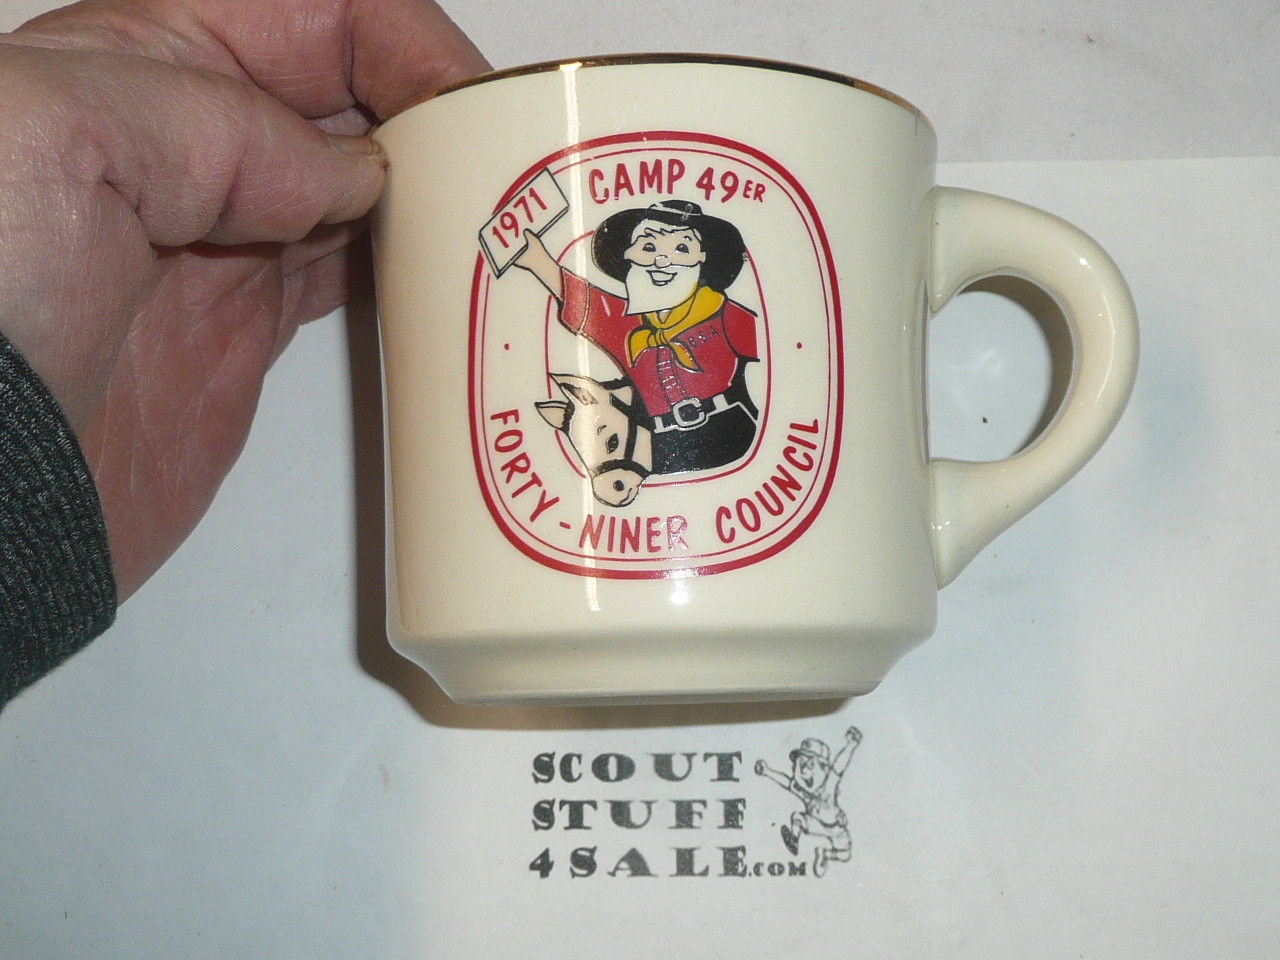 1971 Camp 49er Mug, Forty Niner Council